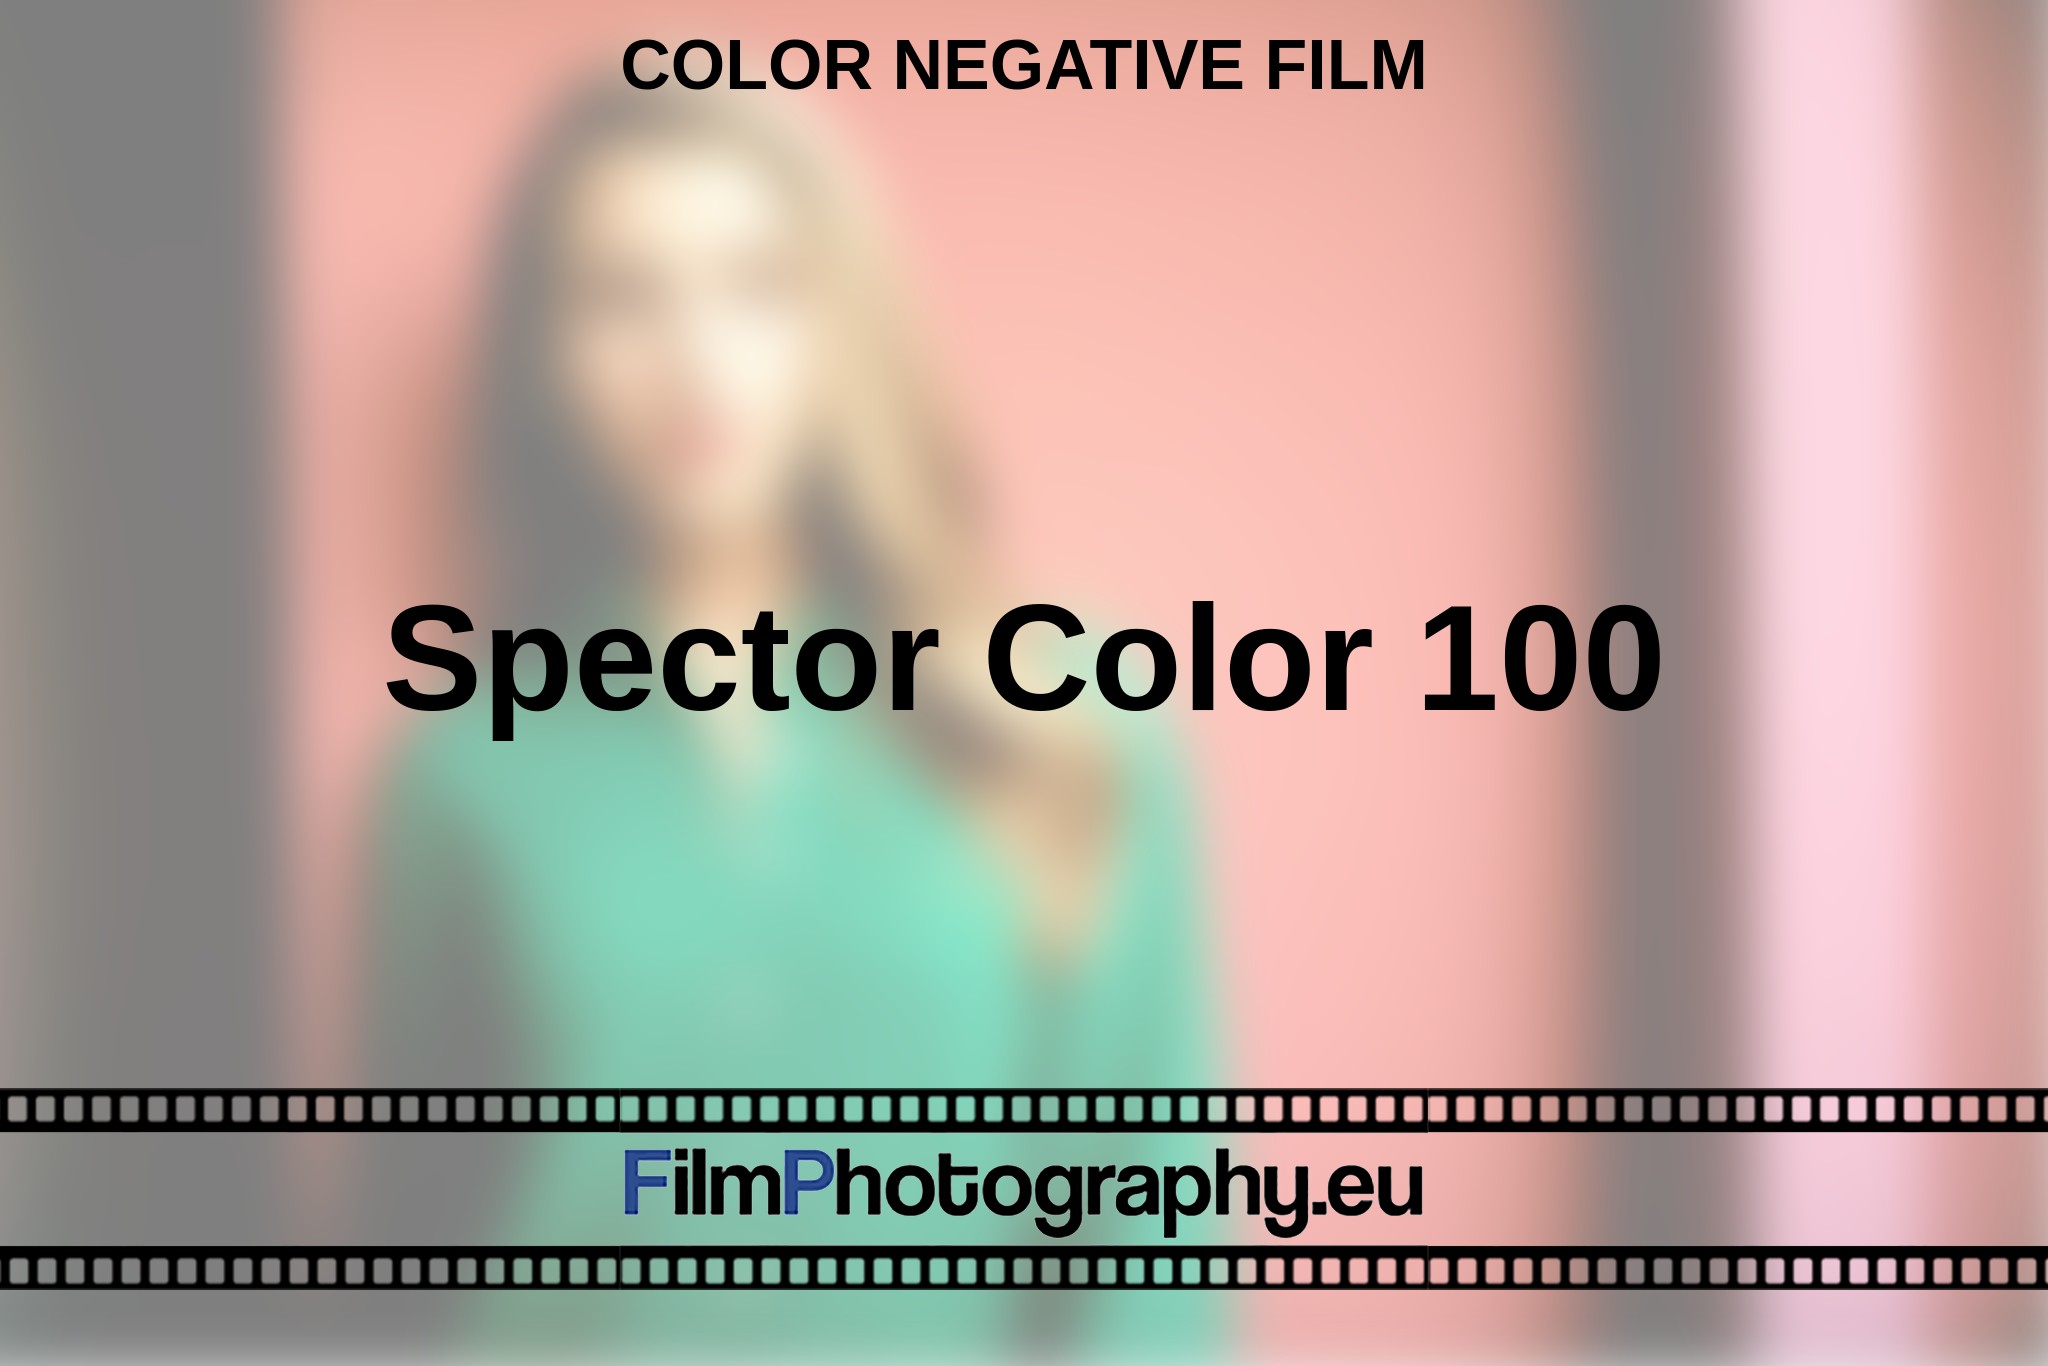 spector-color-100-color-negative-film-en-bnv.jpg